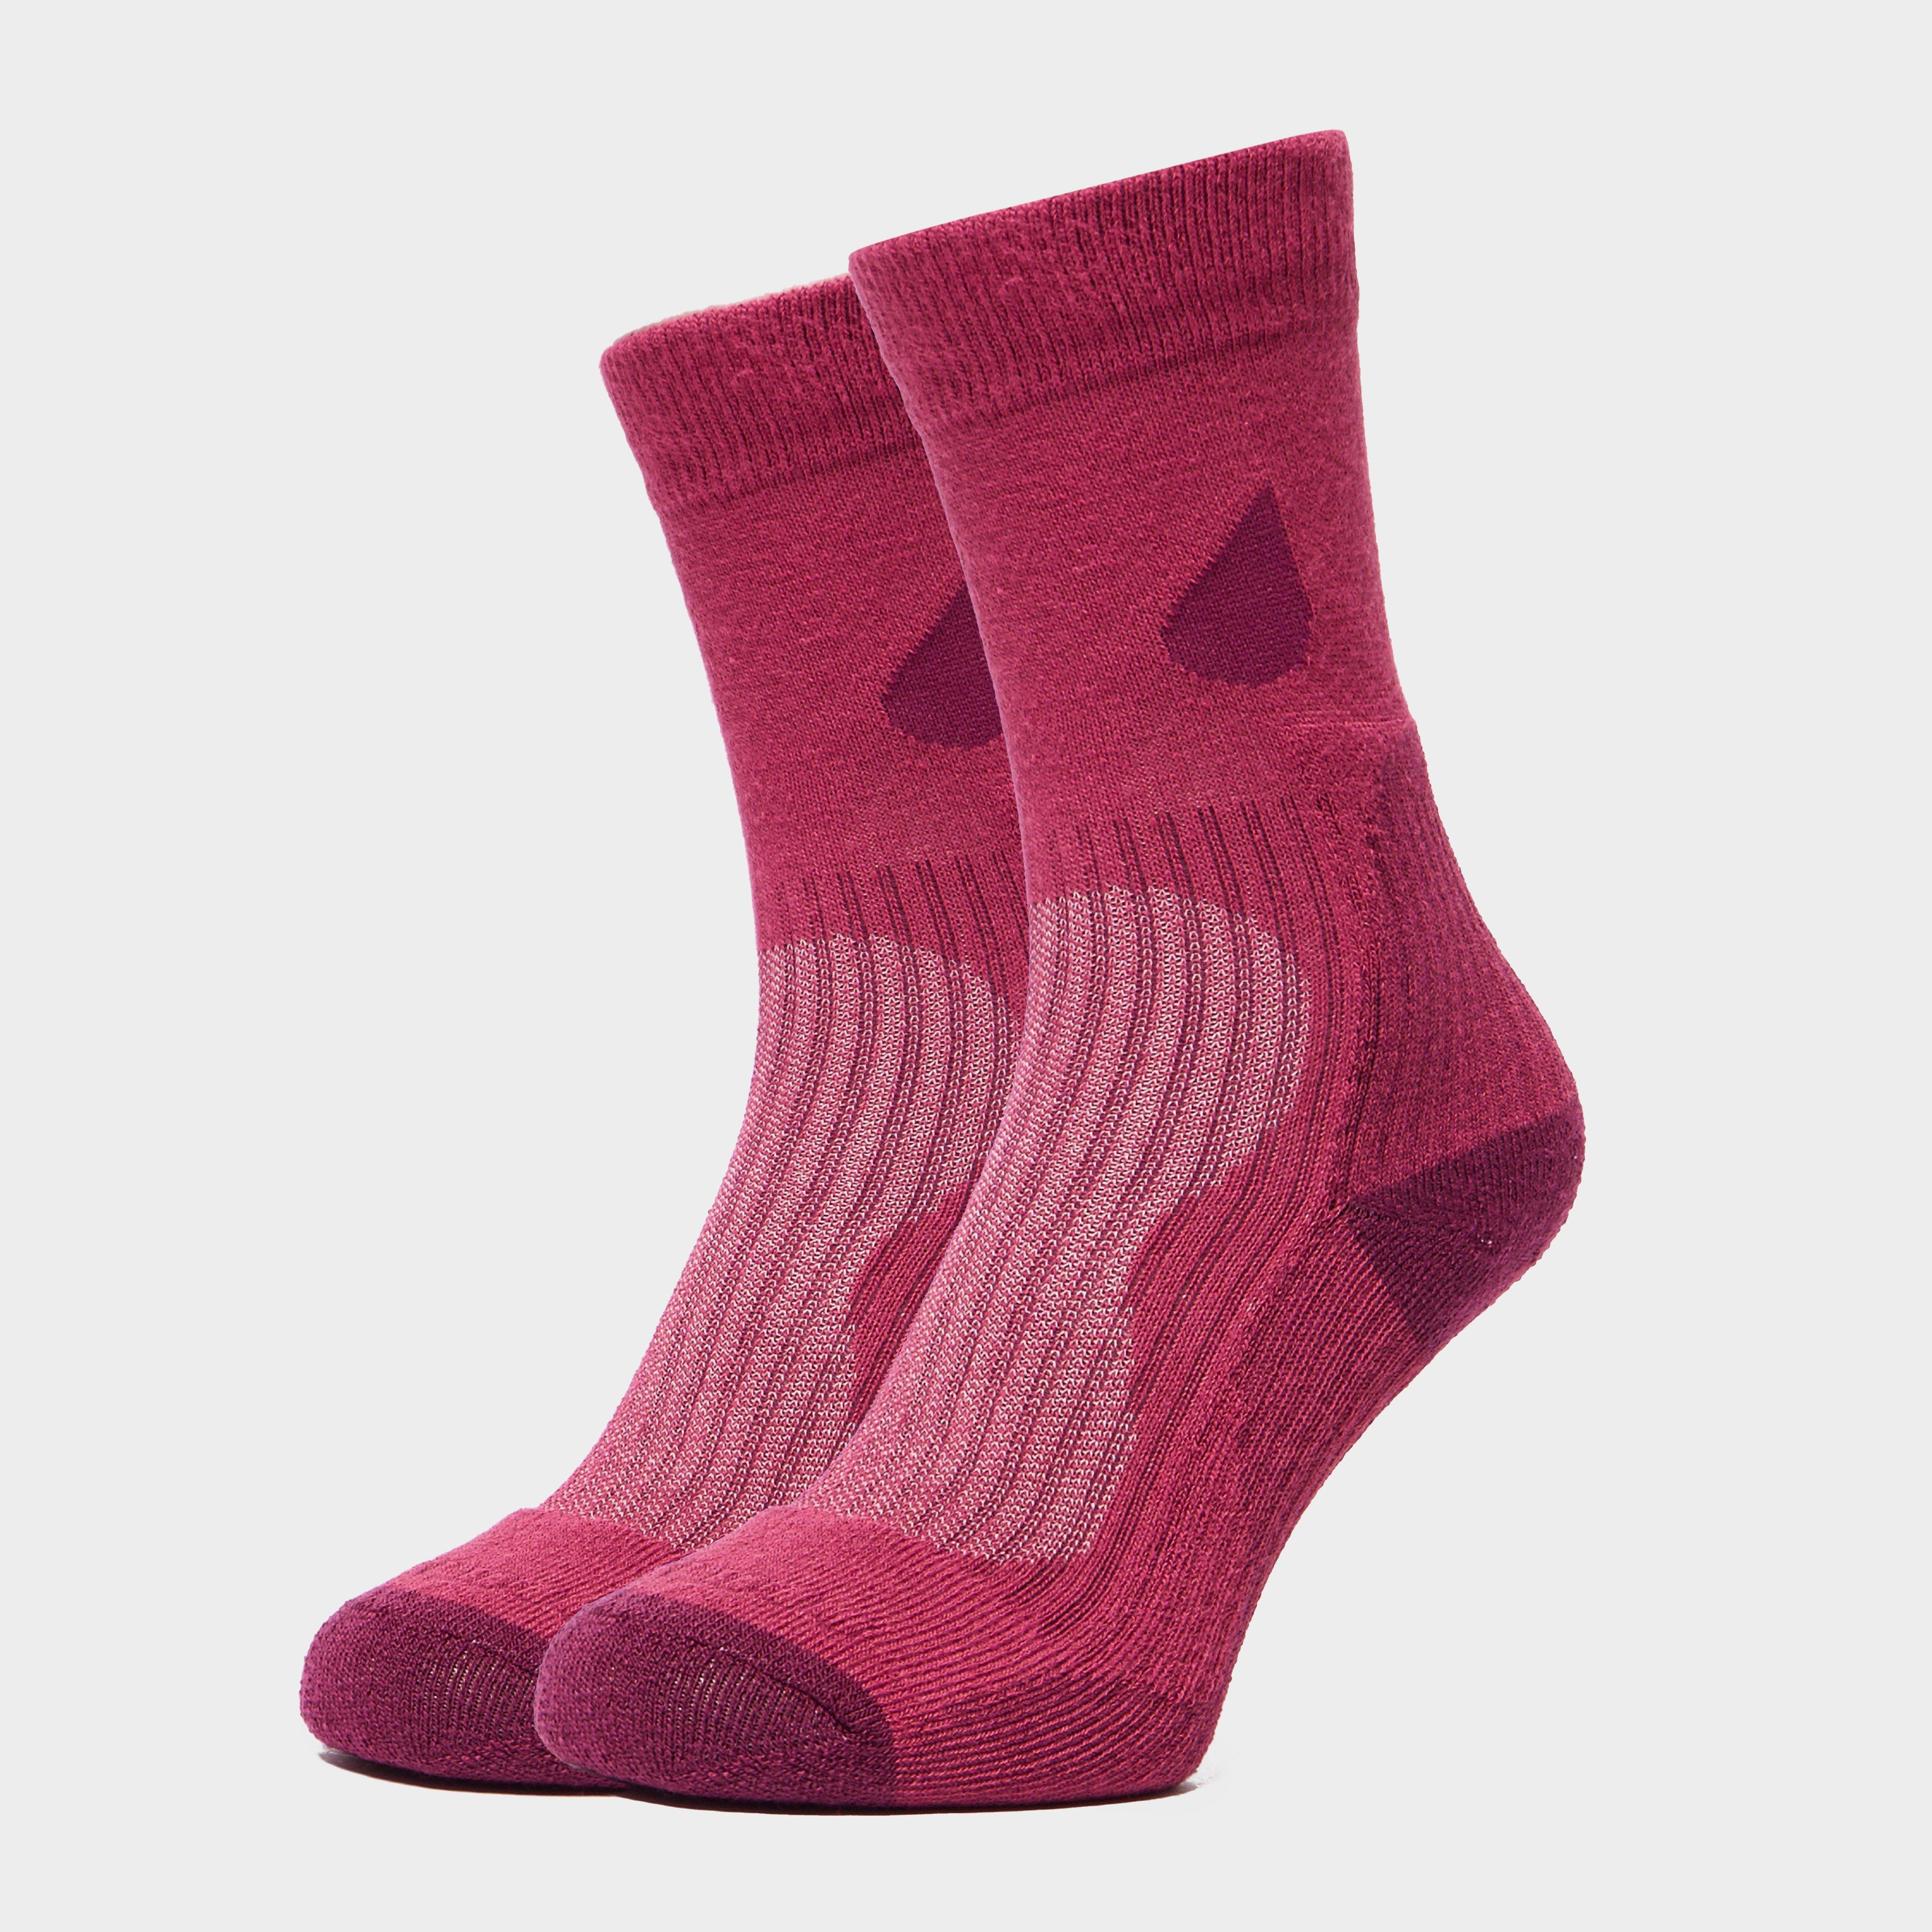 Peter Storm Women's Lightweight Outdoor Socks - 2 Pair Pack, Pink